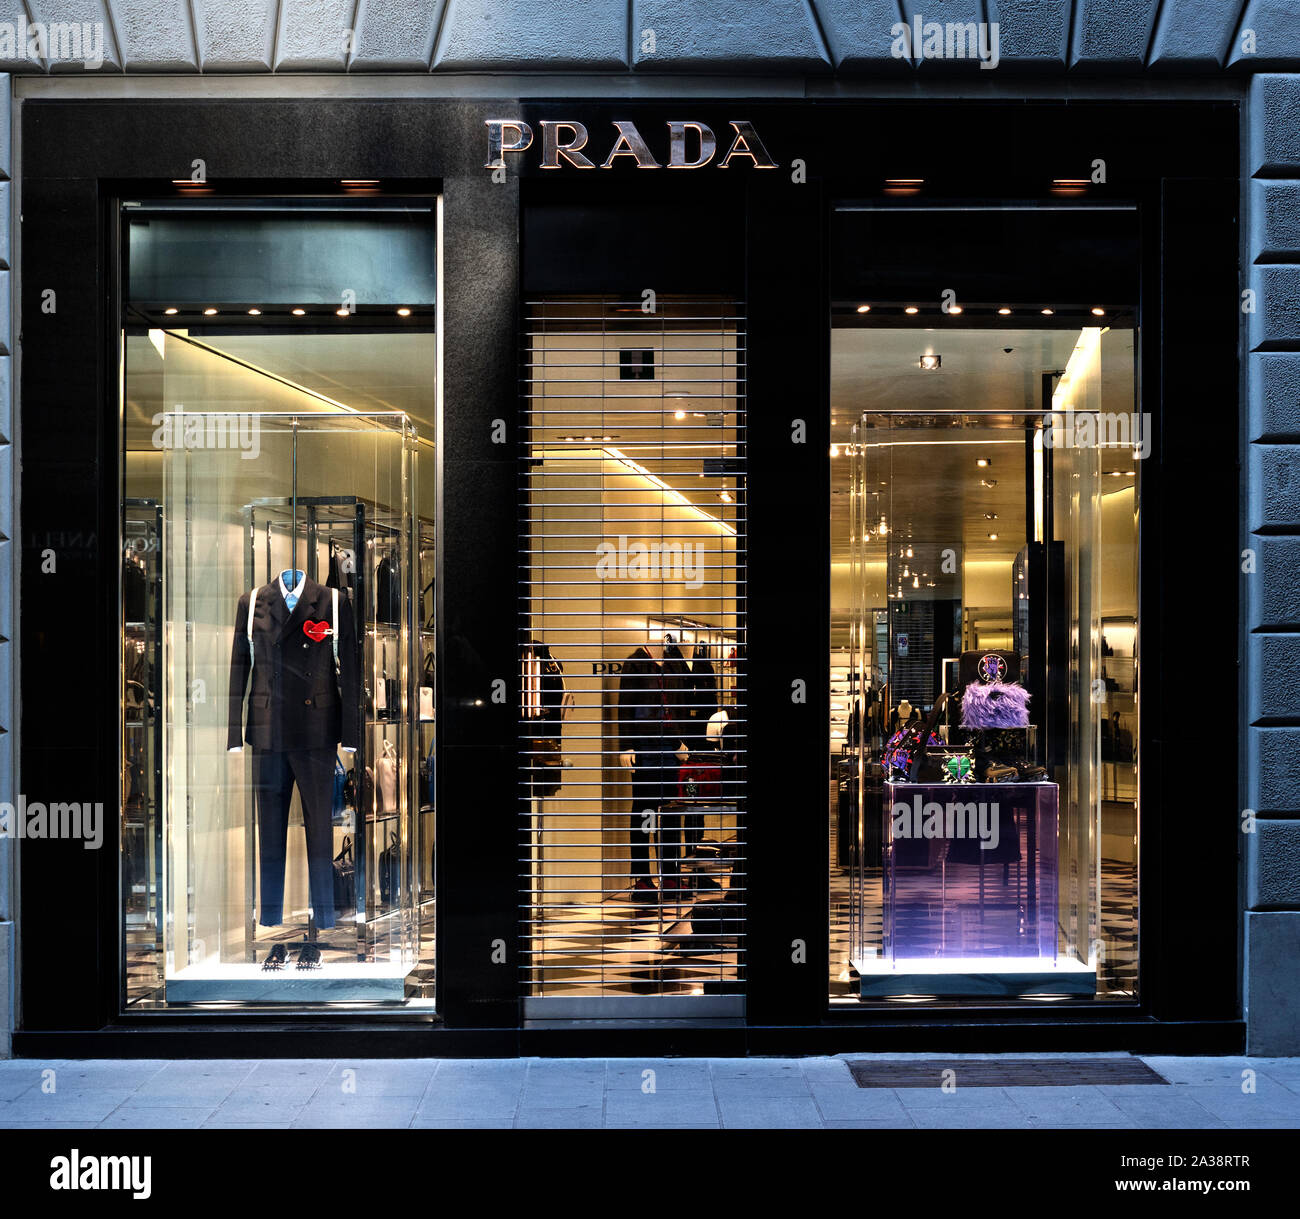 La mode de luxe italienne Prada, maison, magasin, boutique, entreprise, société, italie Banque D'Images